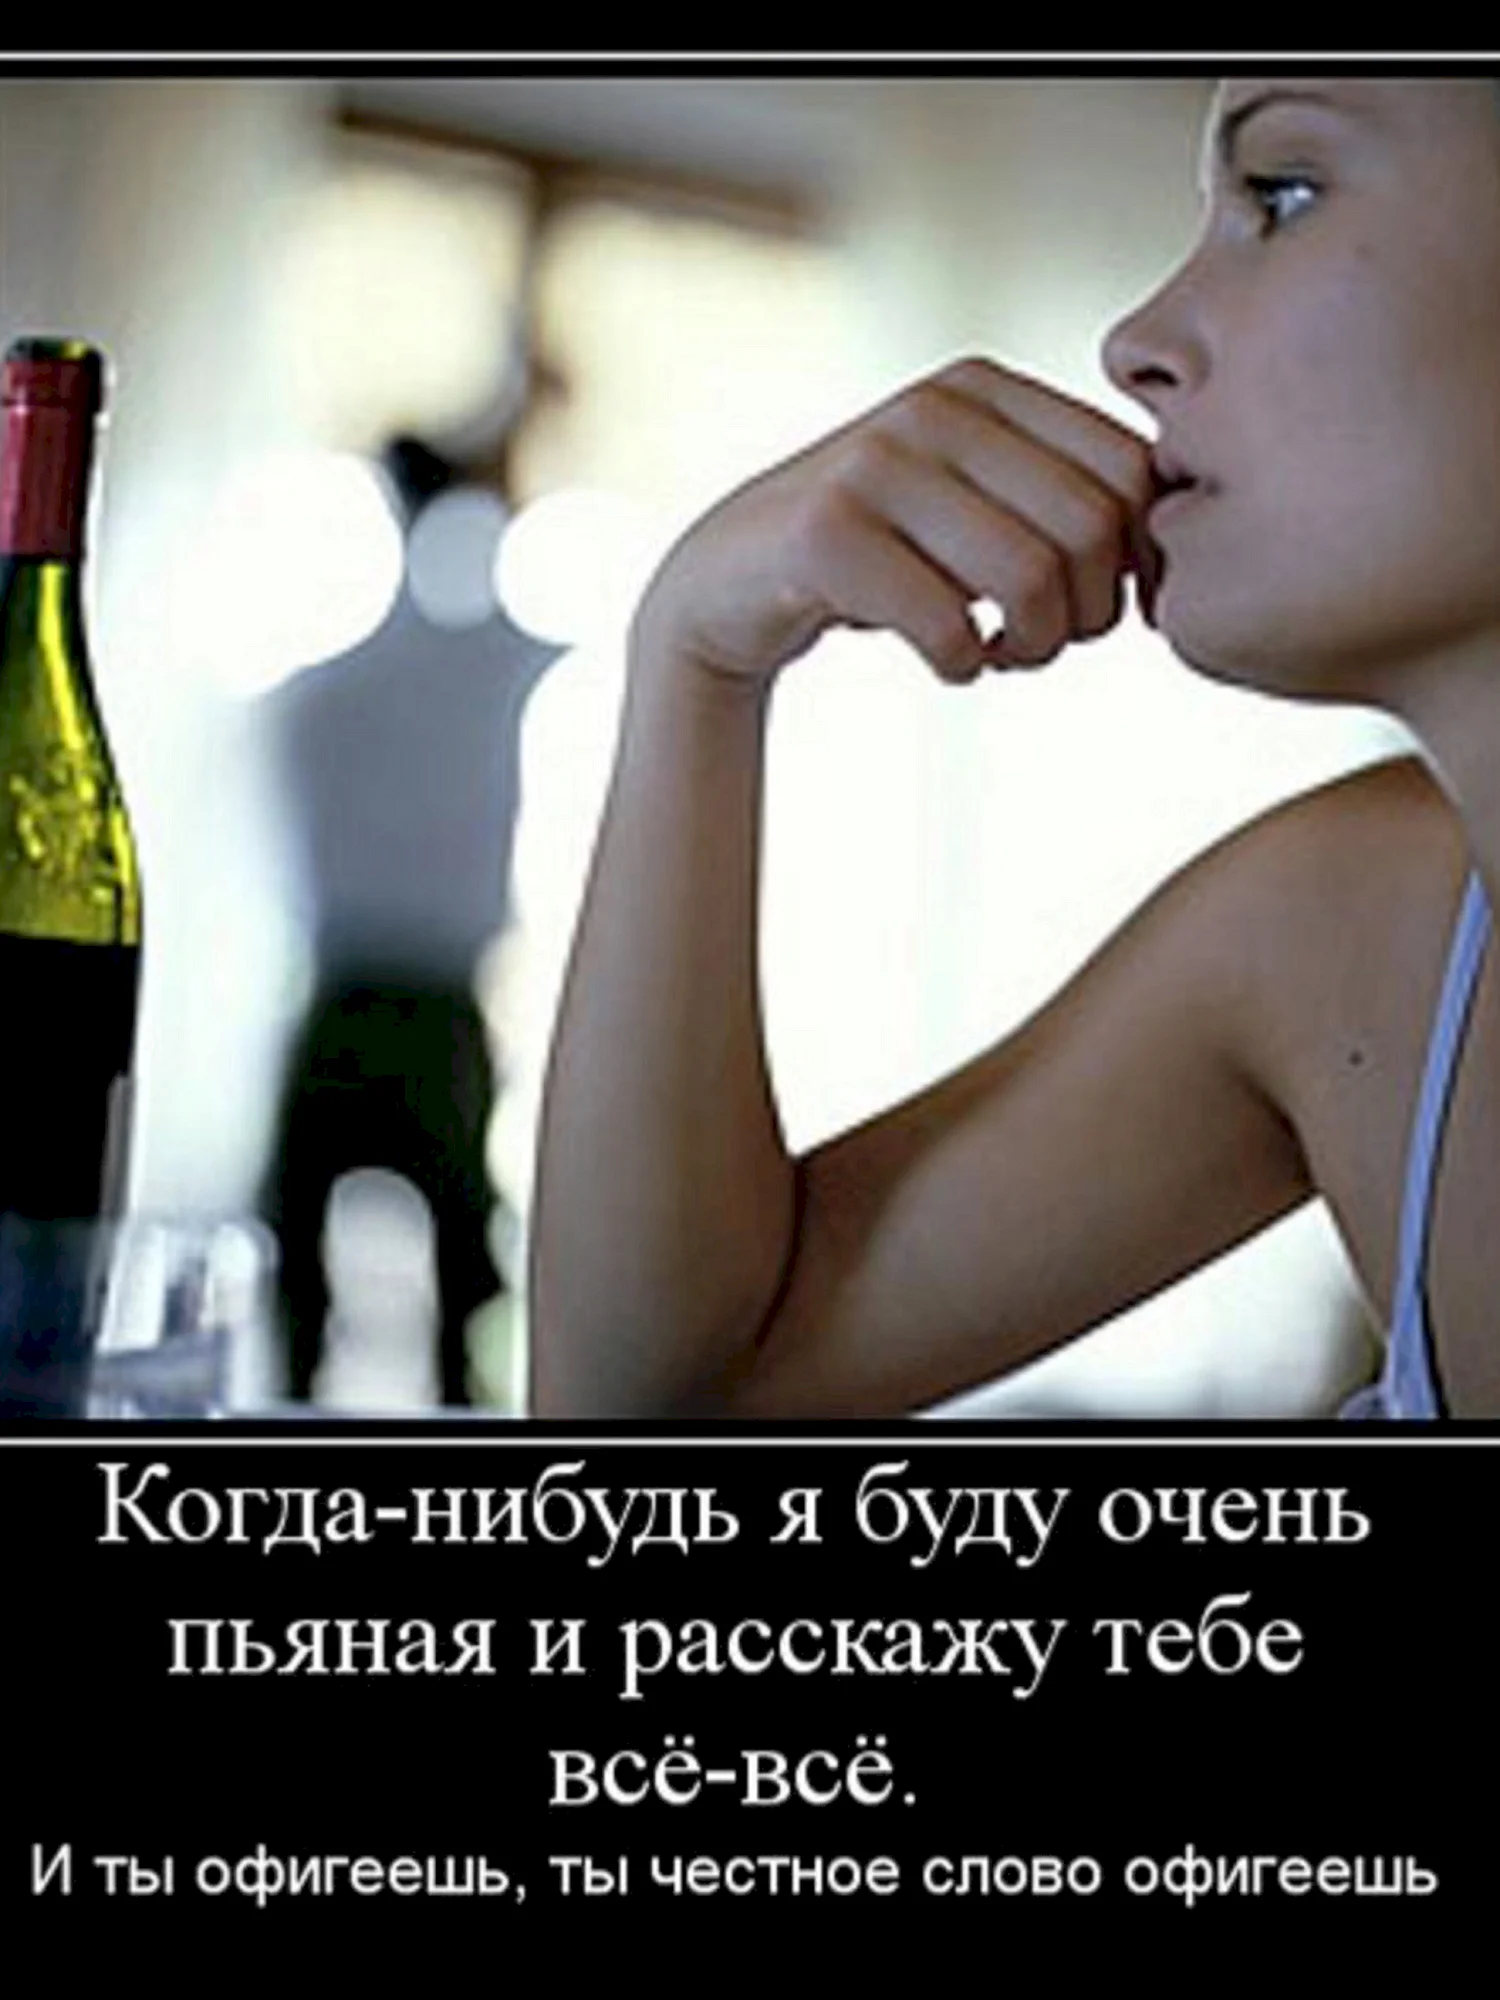 Цитаты про пьющих женщин